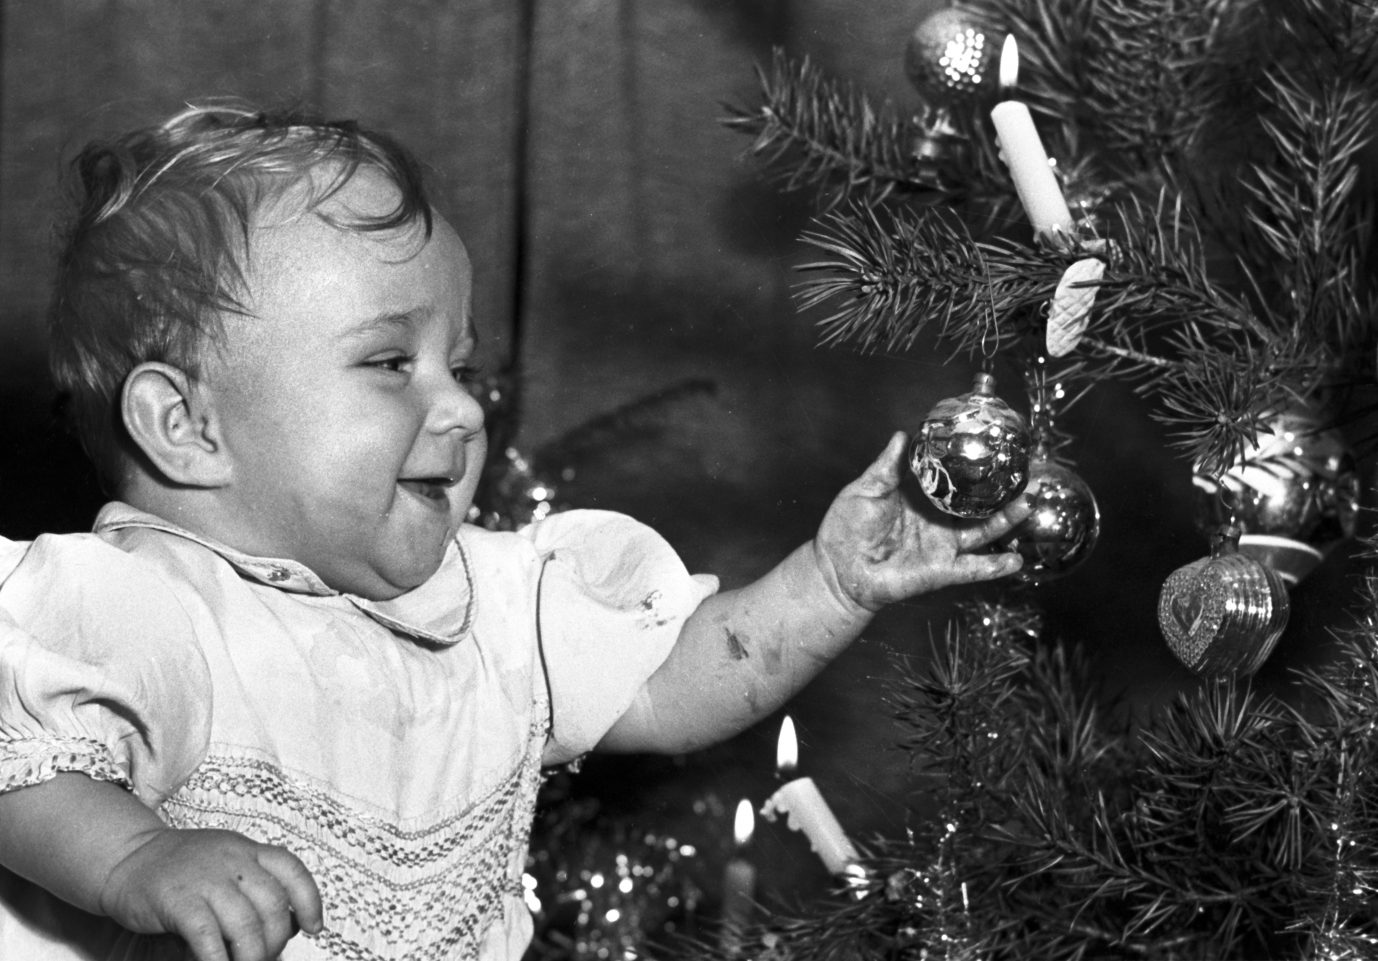 Die wenigsten Familien konnten sich am ersten Heiligabend nach dem Zweiten Weltkrieg über einen Weihnachtsbaum freuen Foto: picture-alliance / Heinz-Juergen Goettert | Heinz-Juergen Goettert